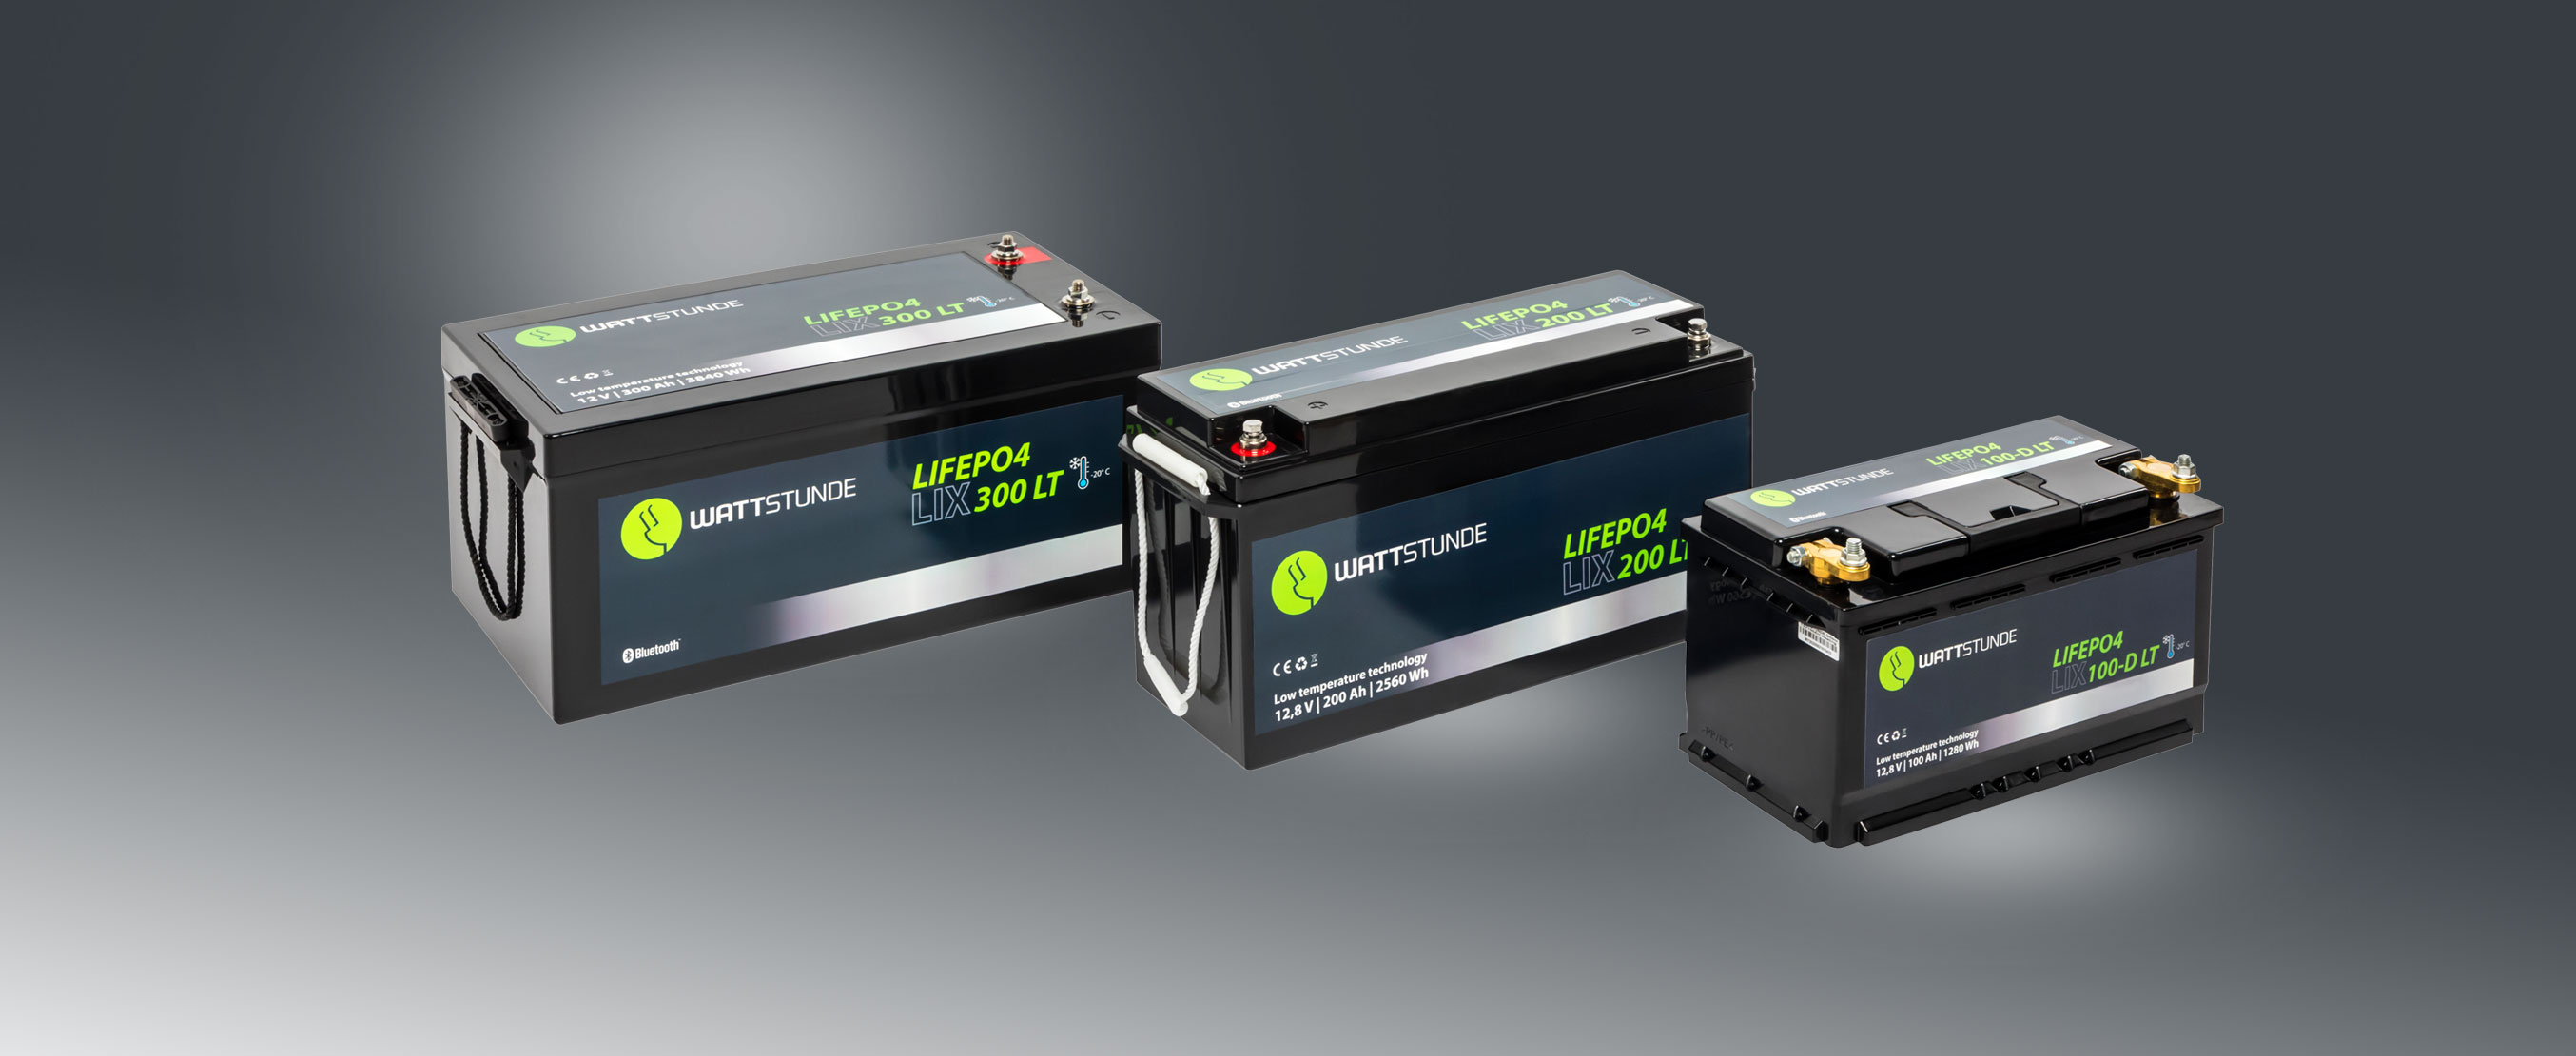 WATTSTUNDE®200Ah LiFePO4 Batterie – LIX200-LT – Bluetooth 4.0 INFO